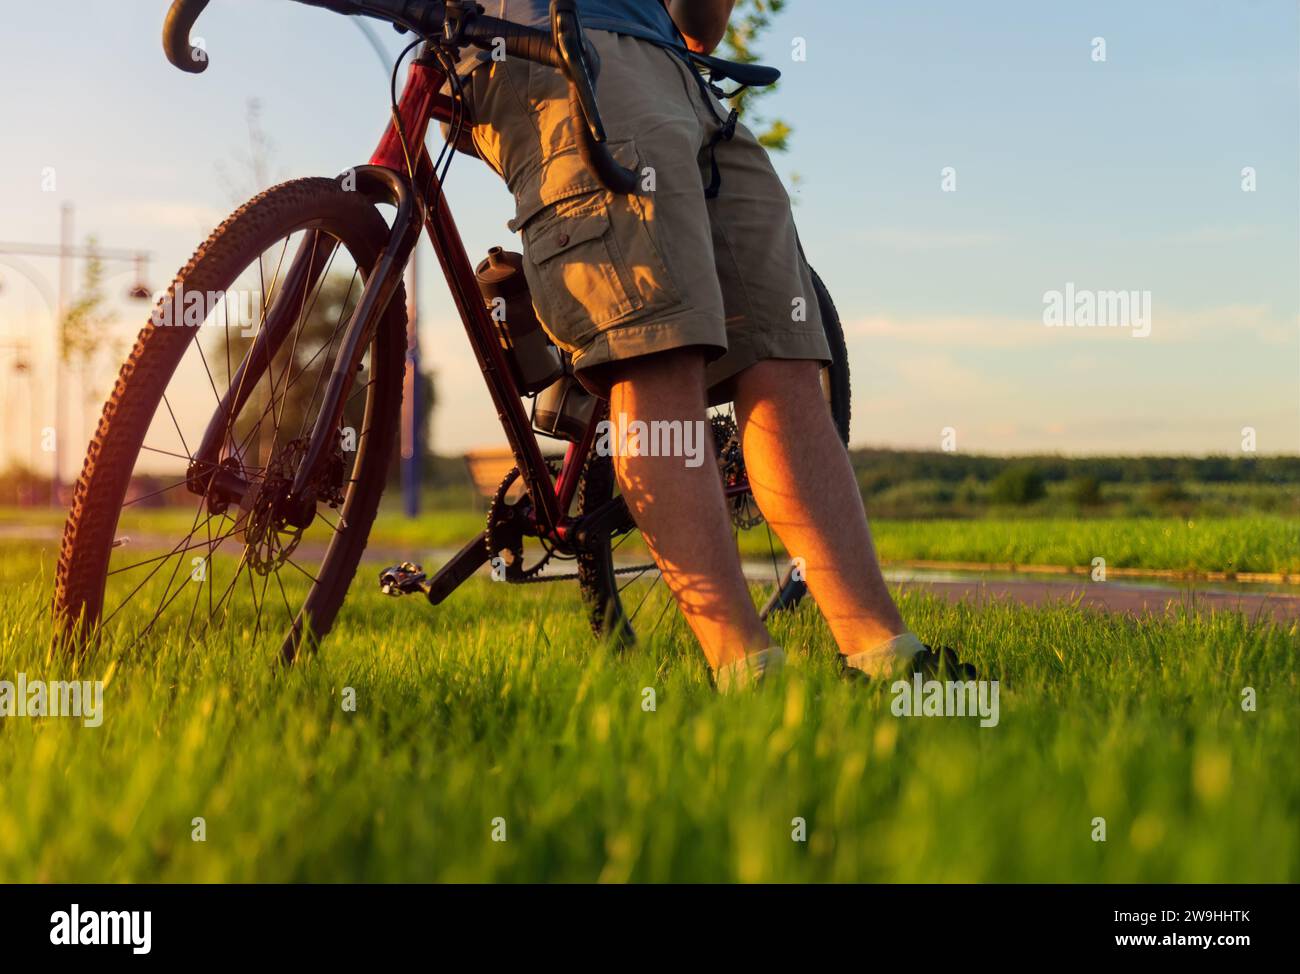 Der Radfahrer sitzt auf einem Schotterrad und liegt auf dem Rasen. Radfahren durch den Park an einem Sommerabend bei Sonnenuntergang. Aktives Lifestyle-Konzept. Stockfoto